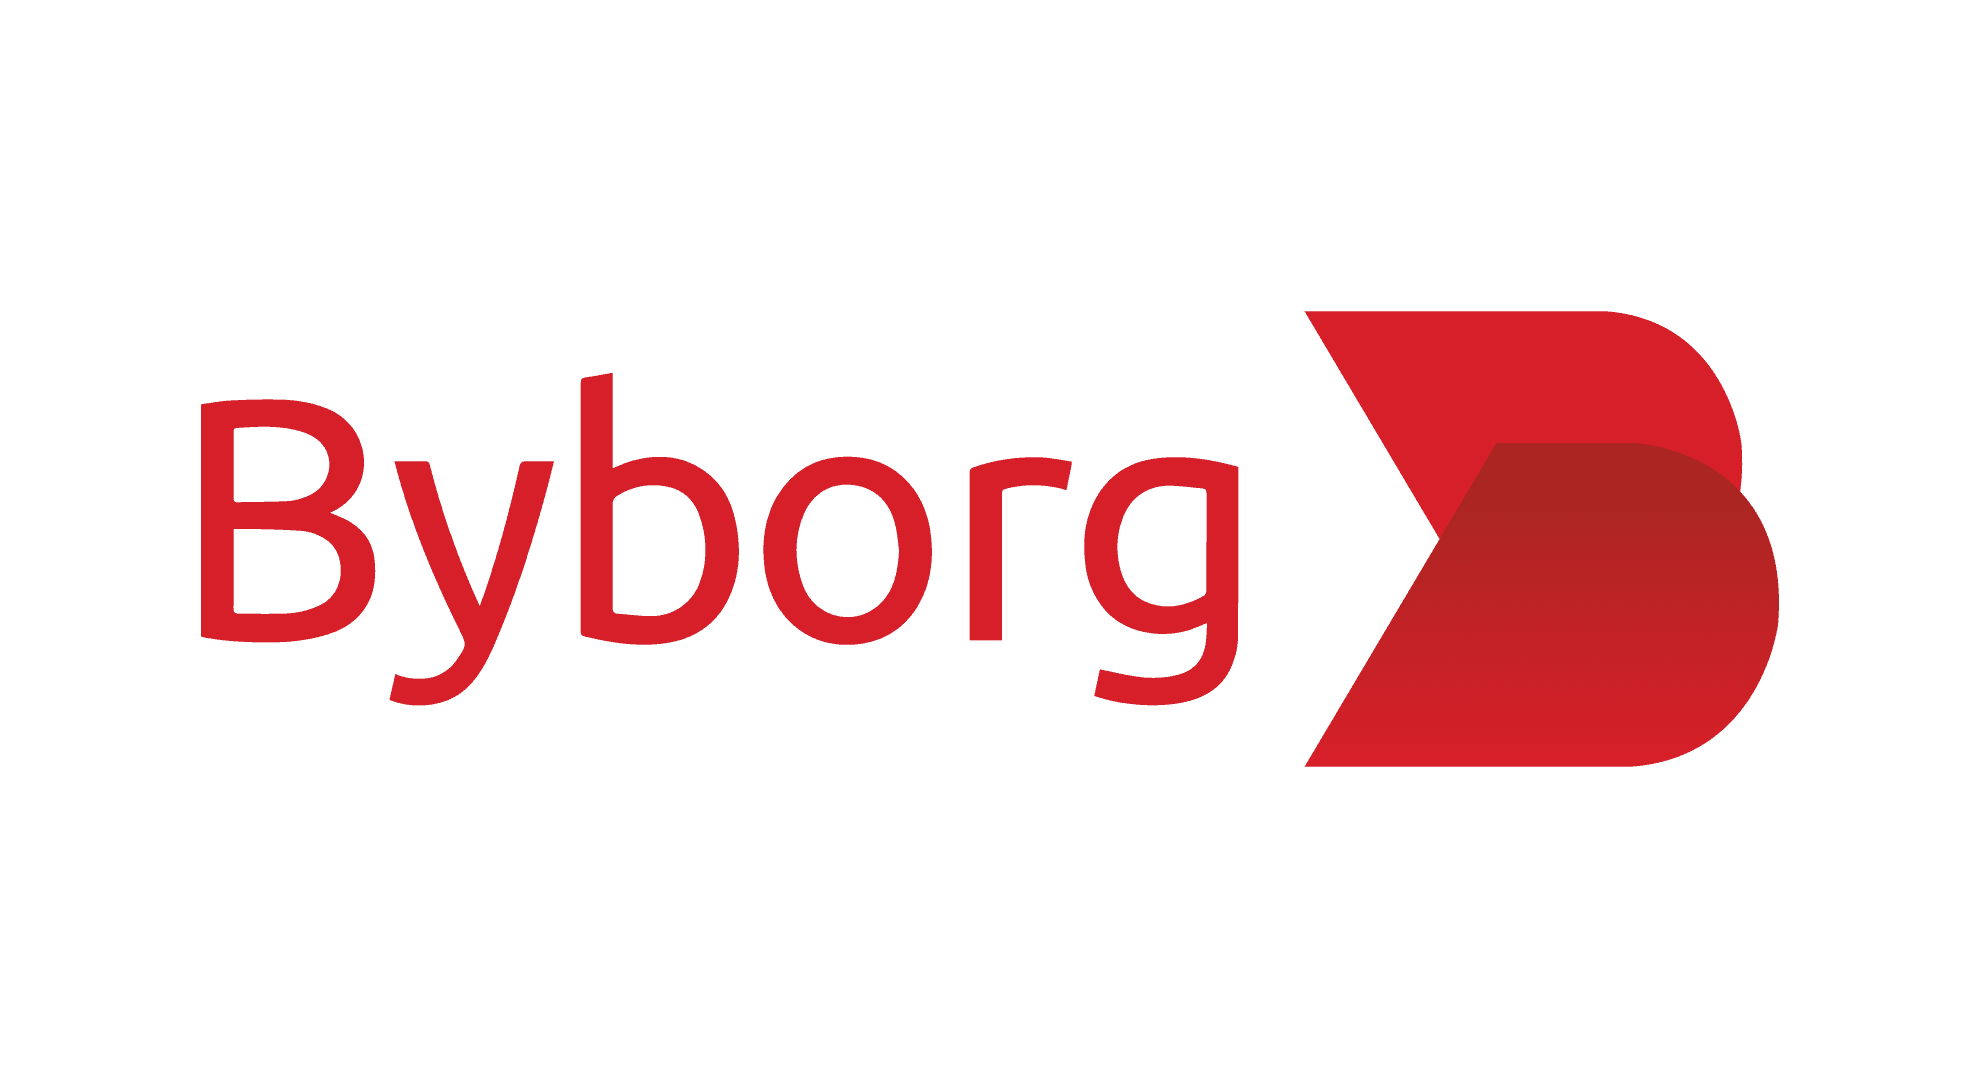 ByBorg Enterprises